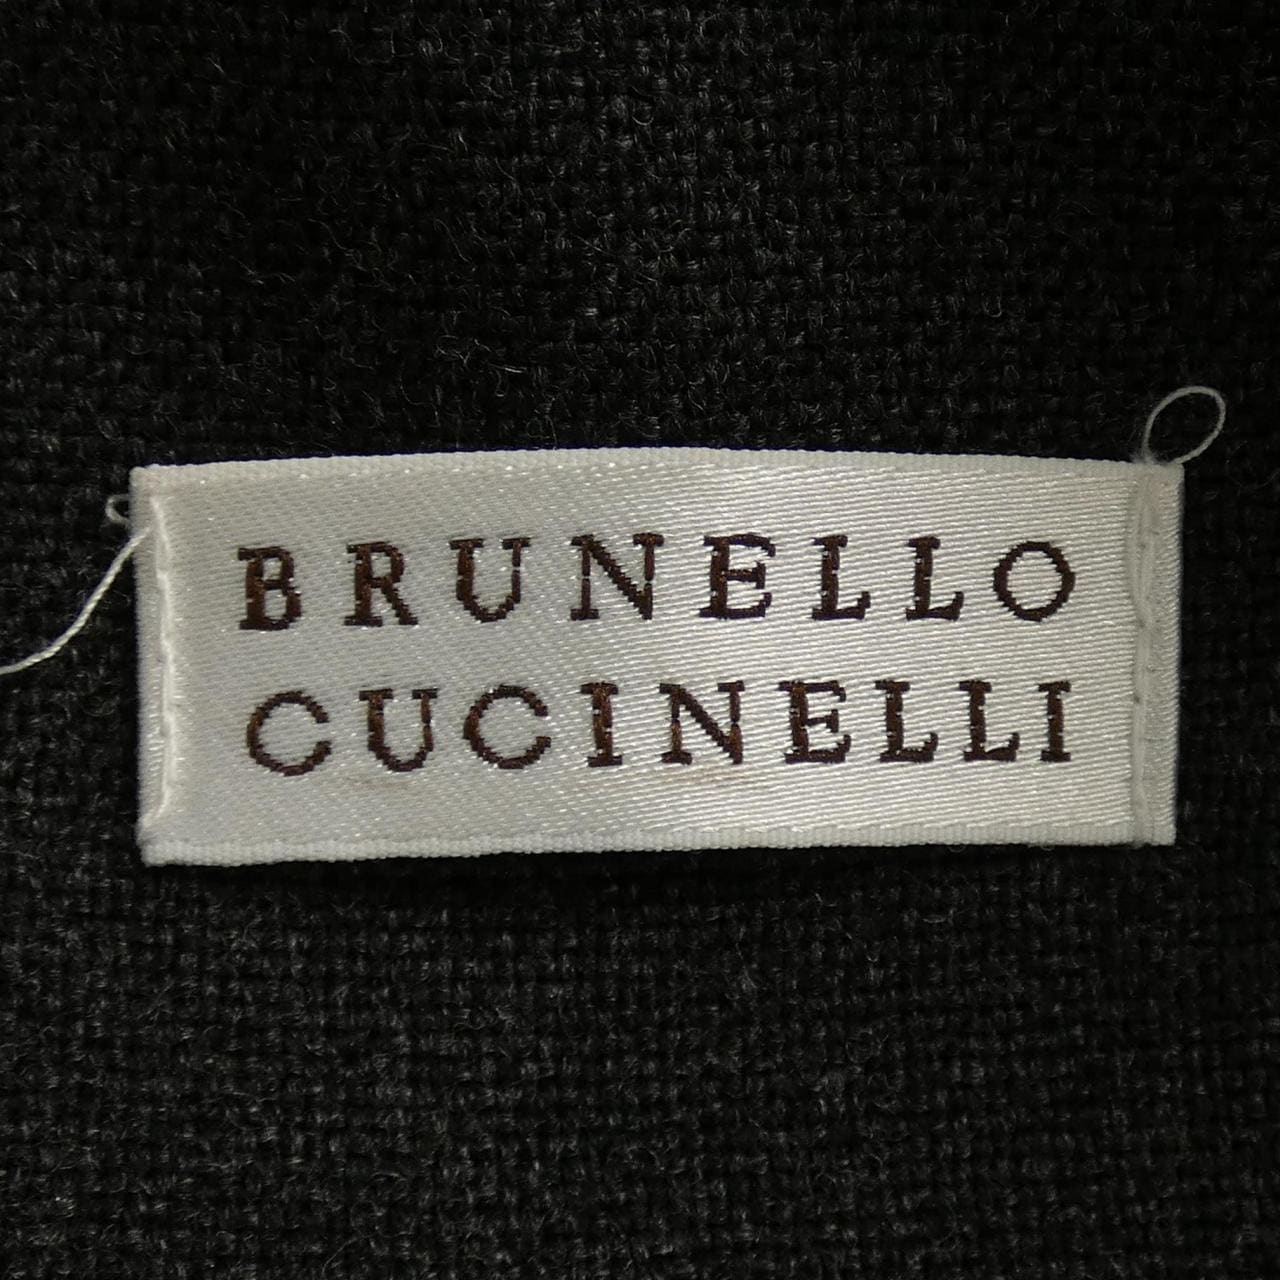 BRUNELLO CUCINELLI CUCINELLI 半身裙